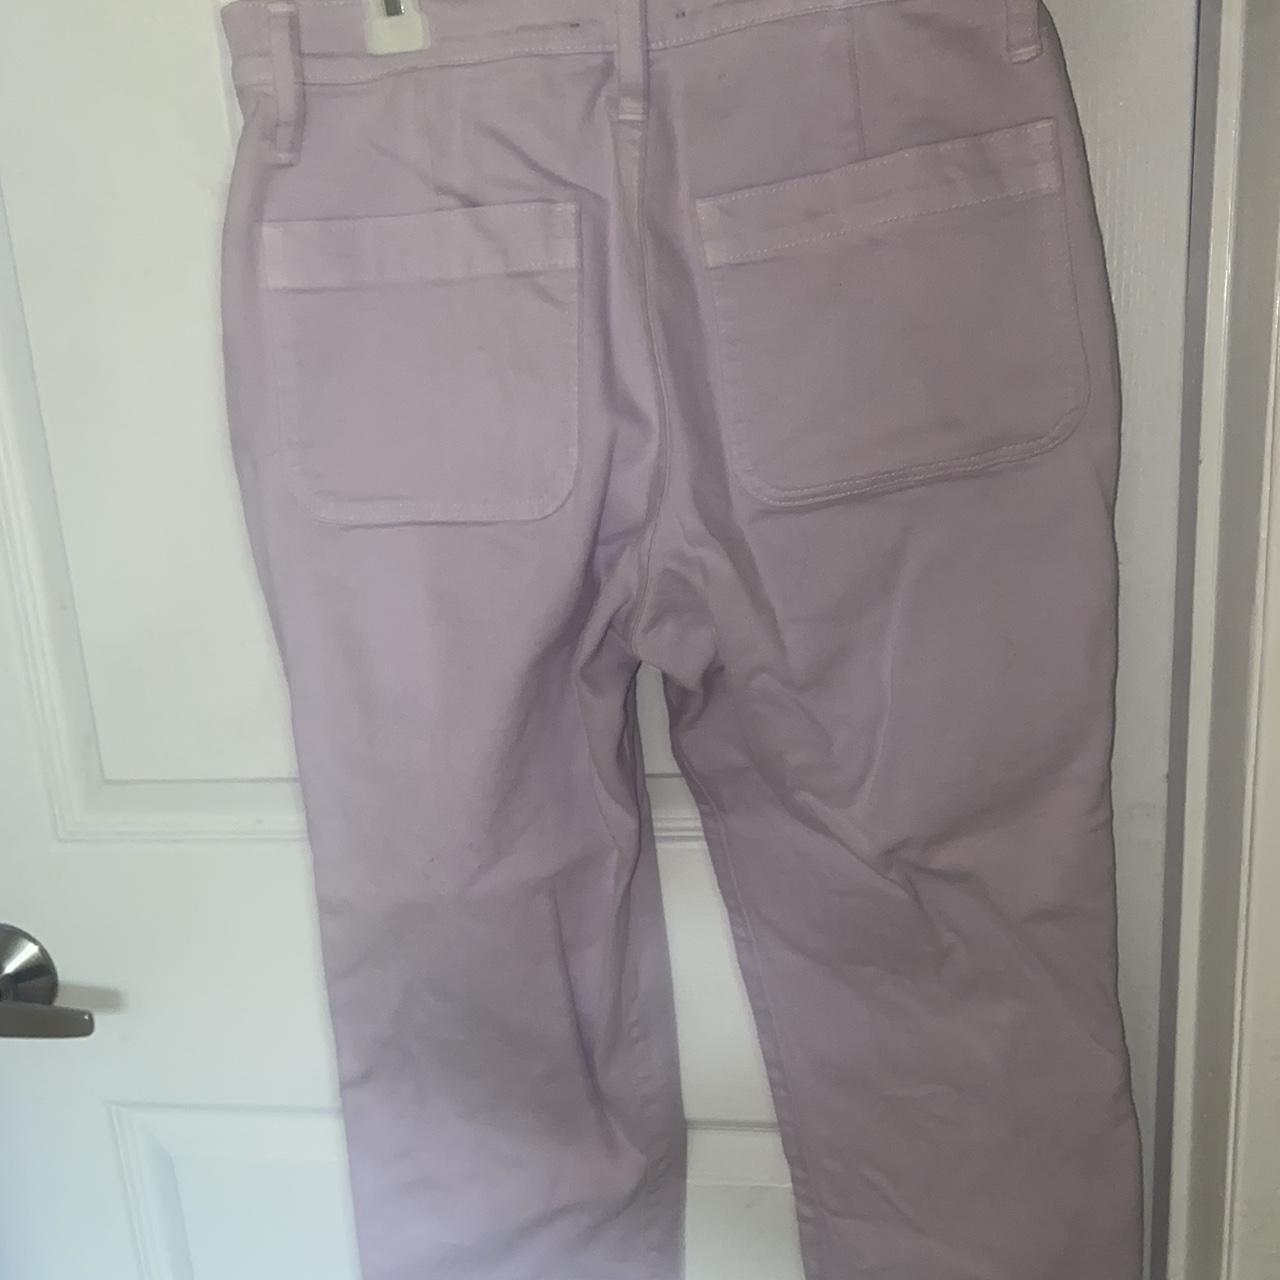 J.Crew Women's Purple Jeans | Depop